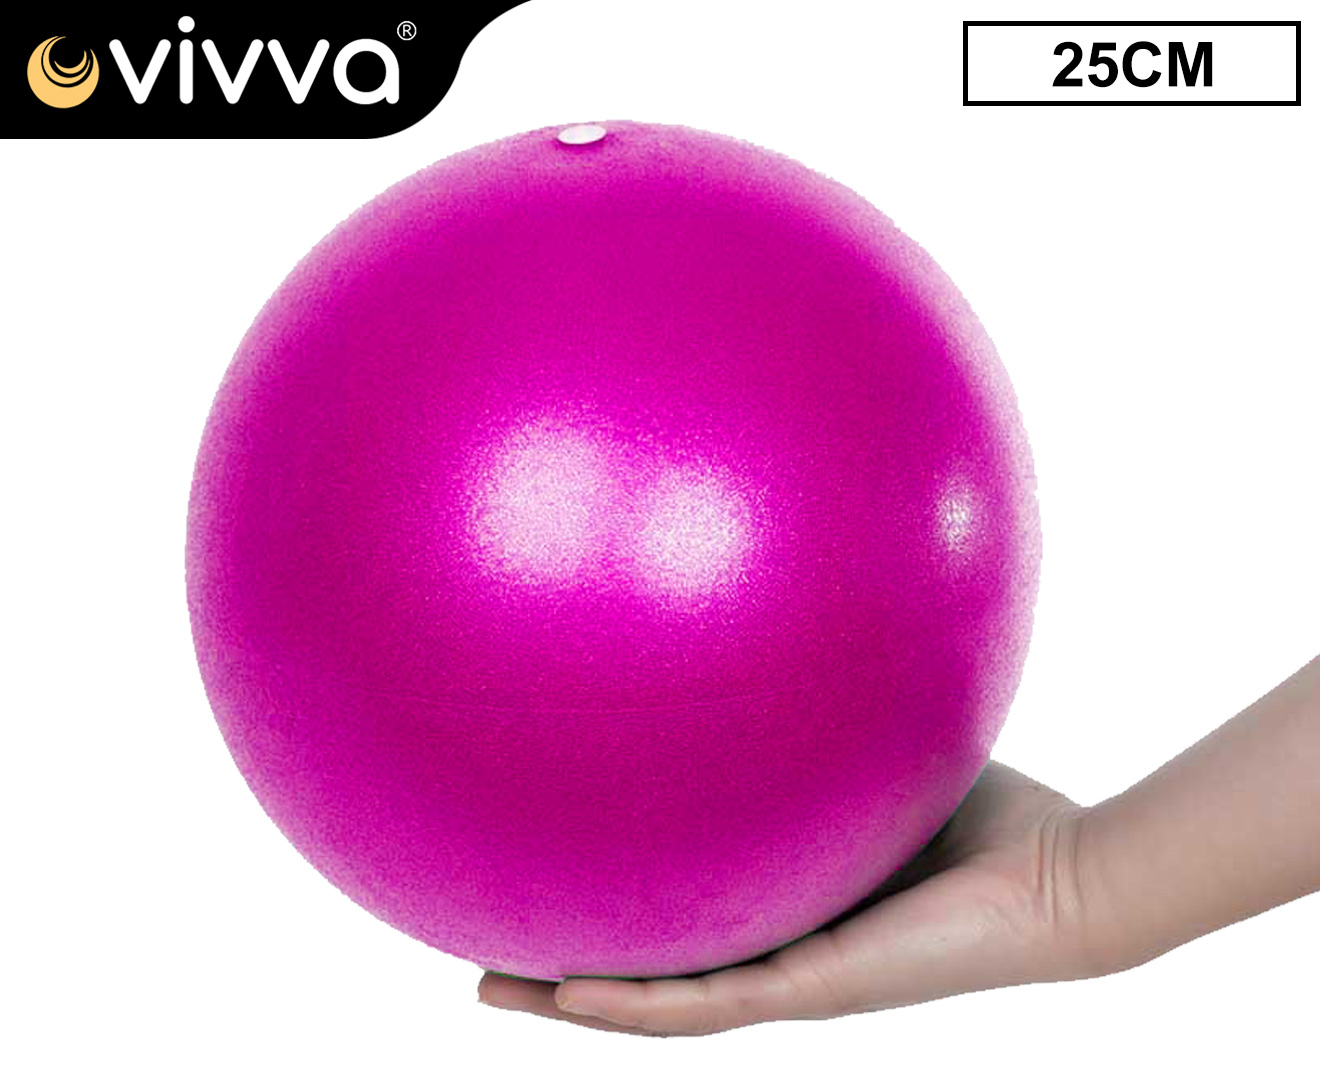 Vivva 25CM Pink Yoga Ball Pilates Fitness Exercise Balls Birthing